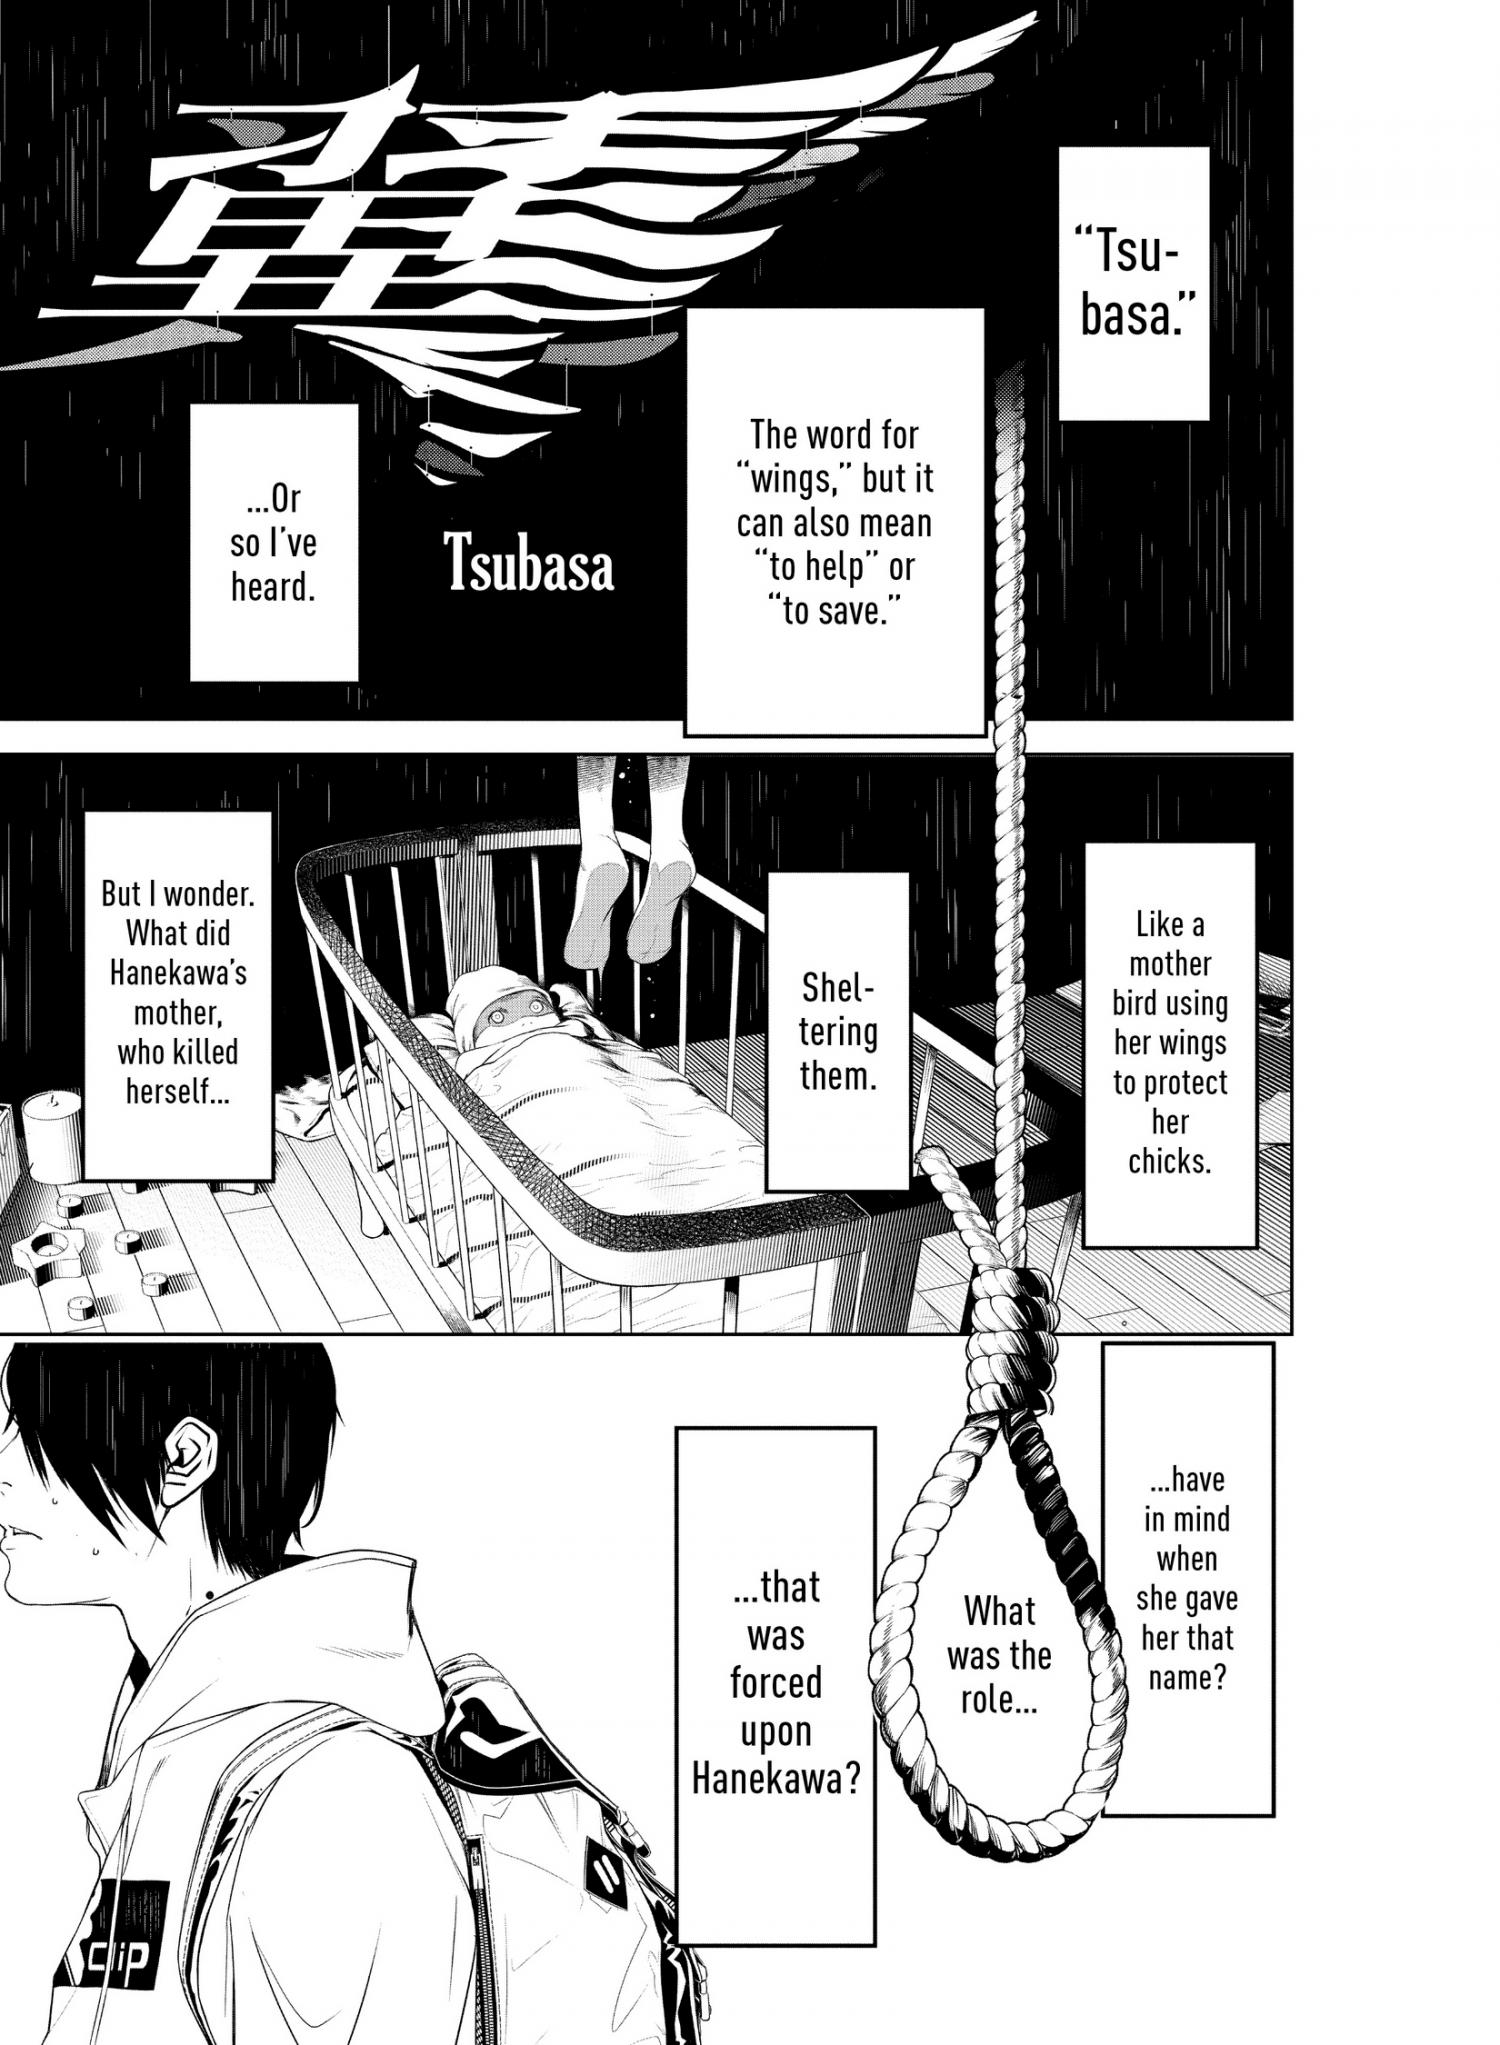 Bakemonogatari (Nishio Ishin) - Page 2